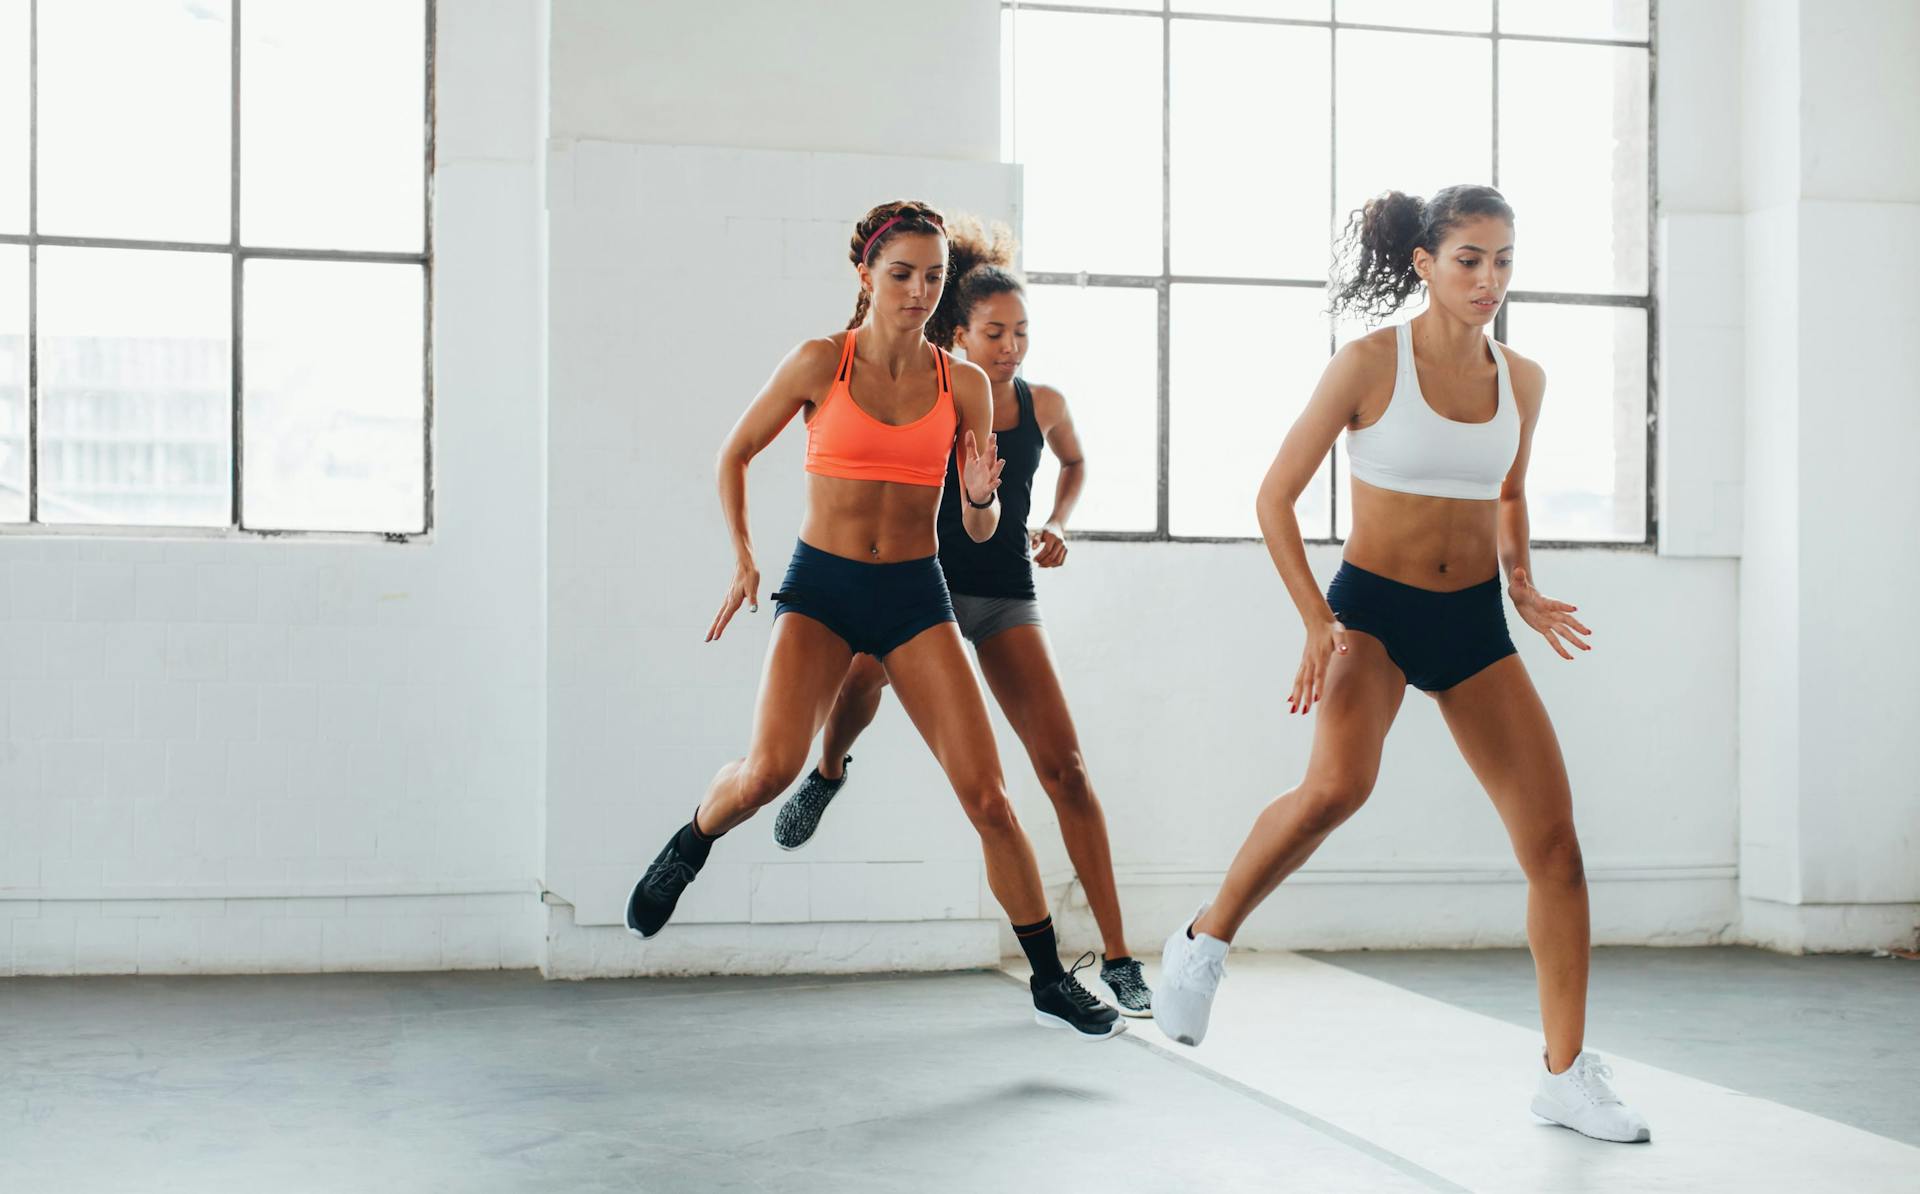 Tres mujeres con sujetadores deportivos y pantalones cortos en una clase de acondicionamiento físico en un gimnasio con paredes desnudas y grandes ventanales saltando de un pie a otro